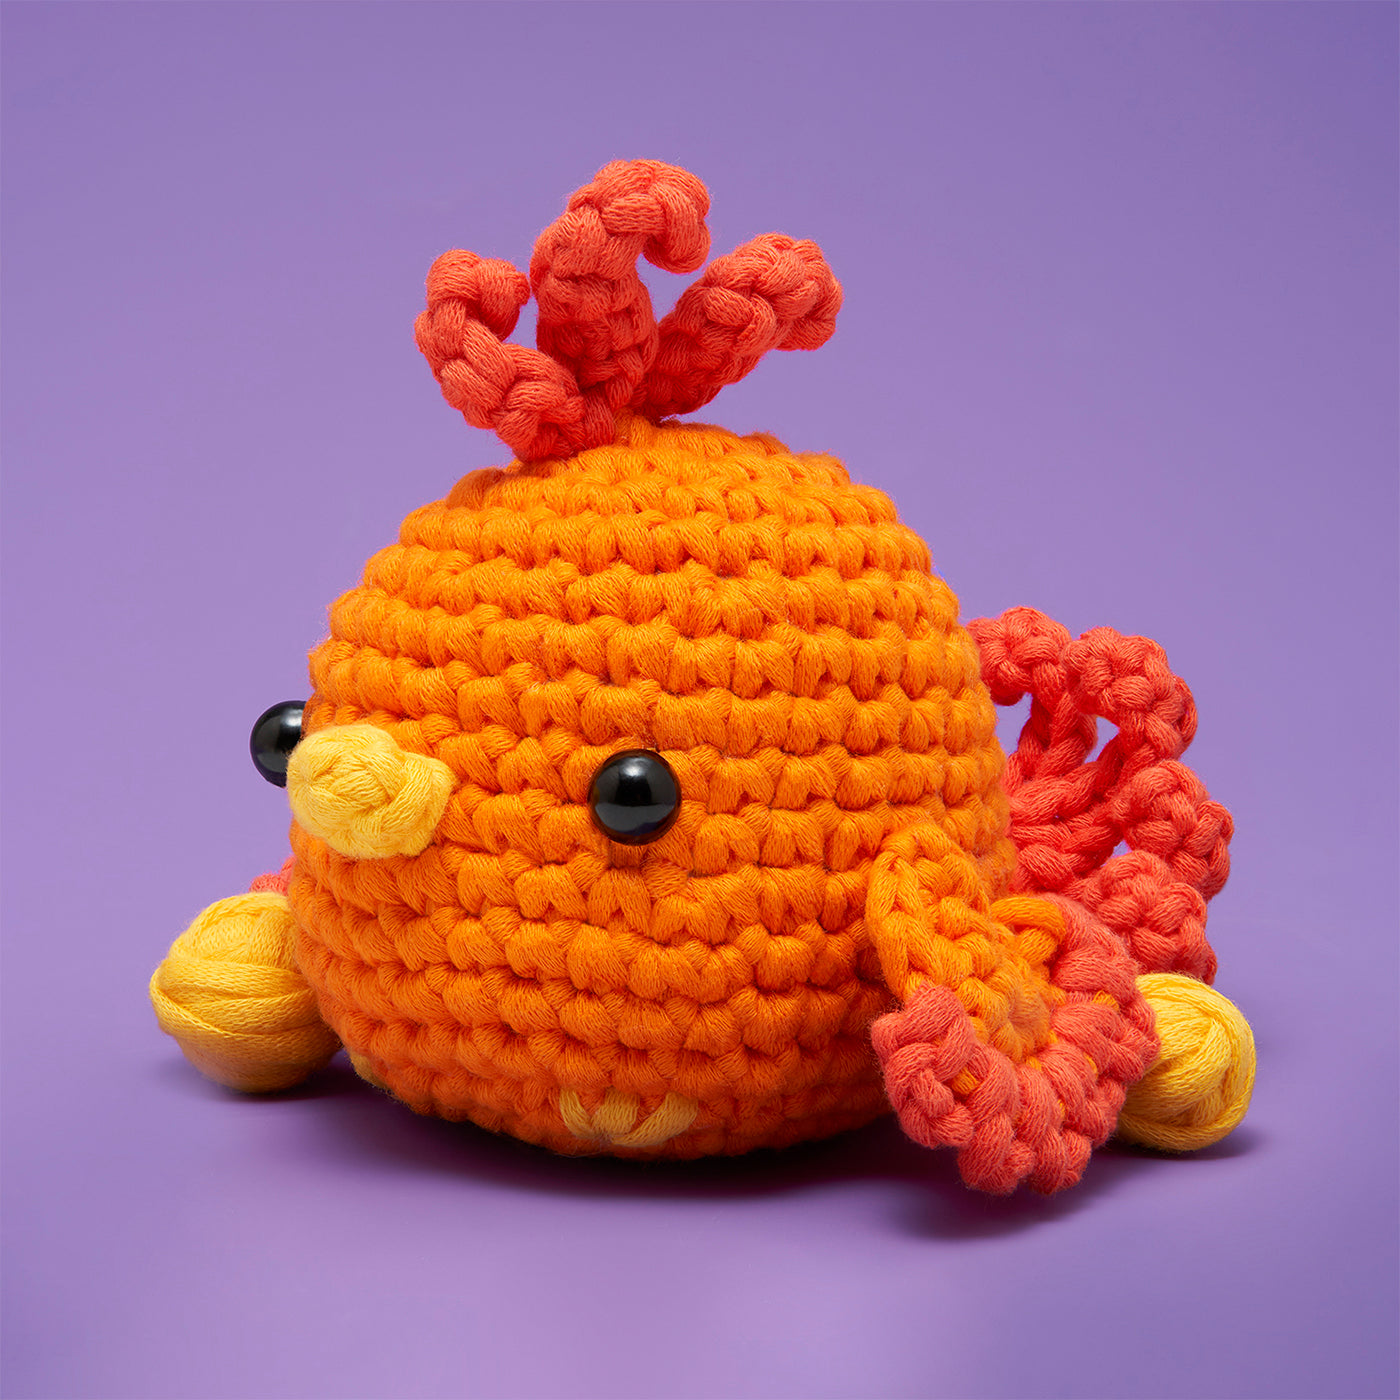 Thingie-ma-bob Crochet kit designed by Hooked on Sunshine